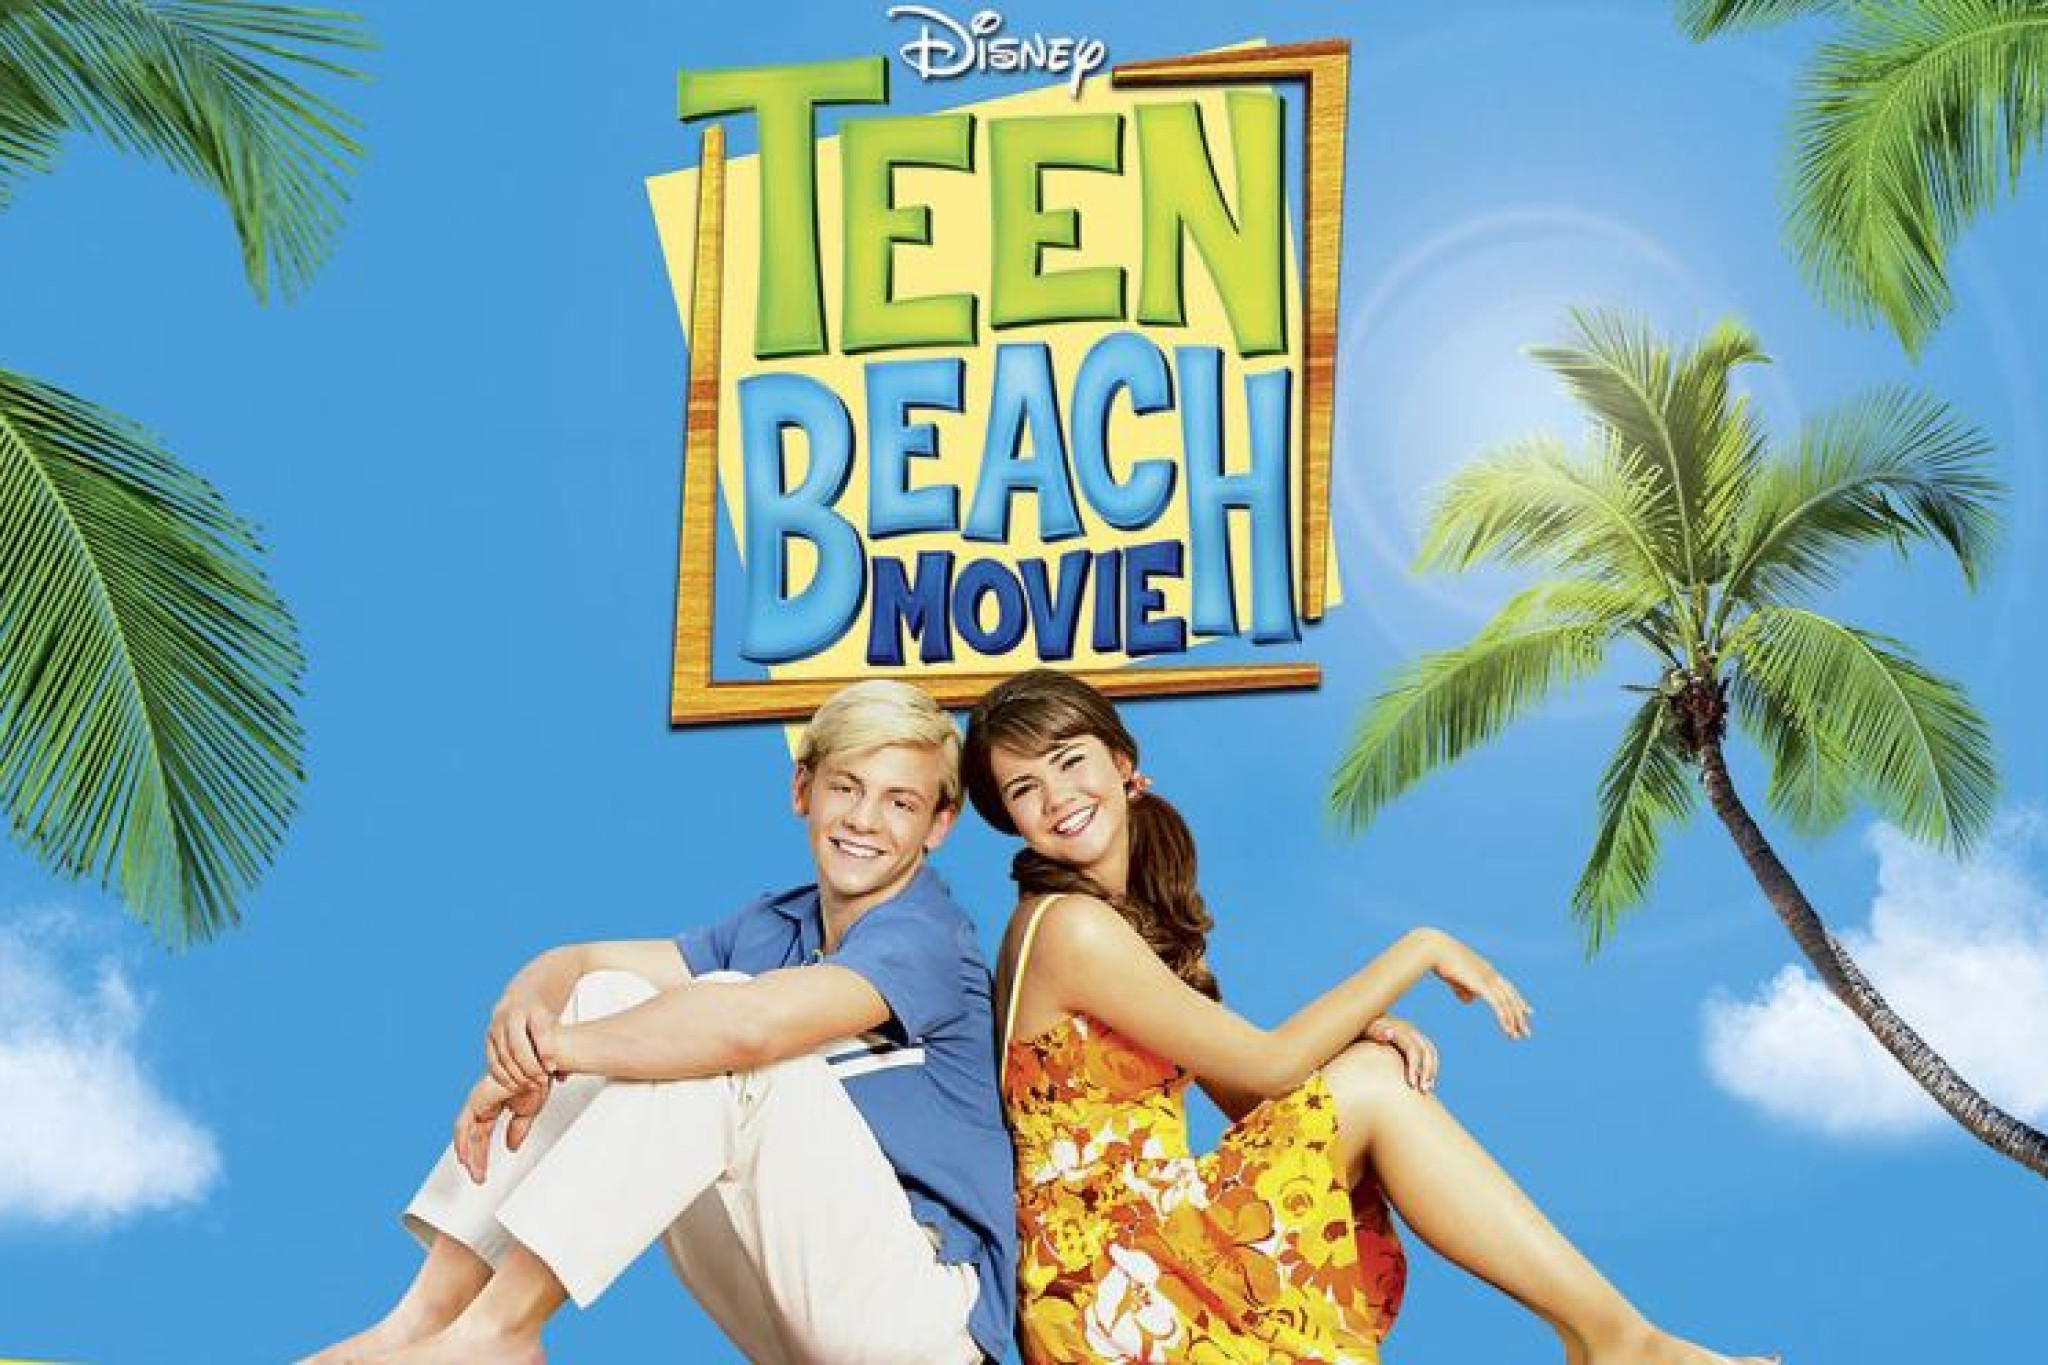 Teen Beach Movie - Die Disney Channel Premiere